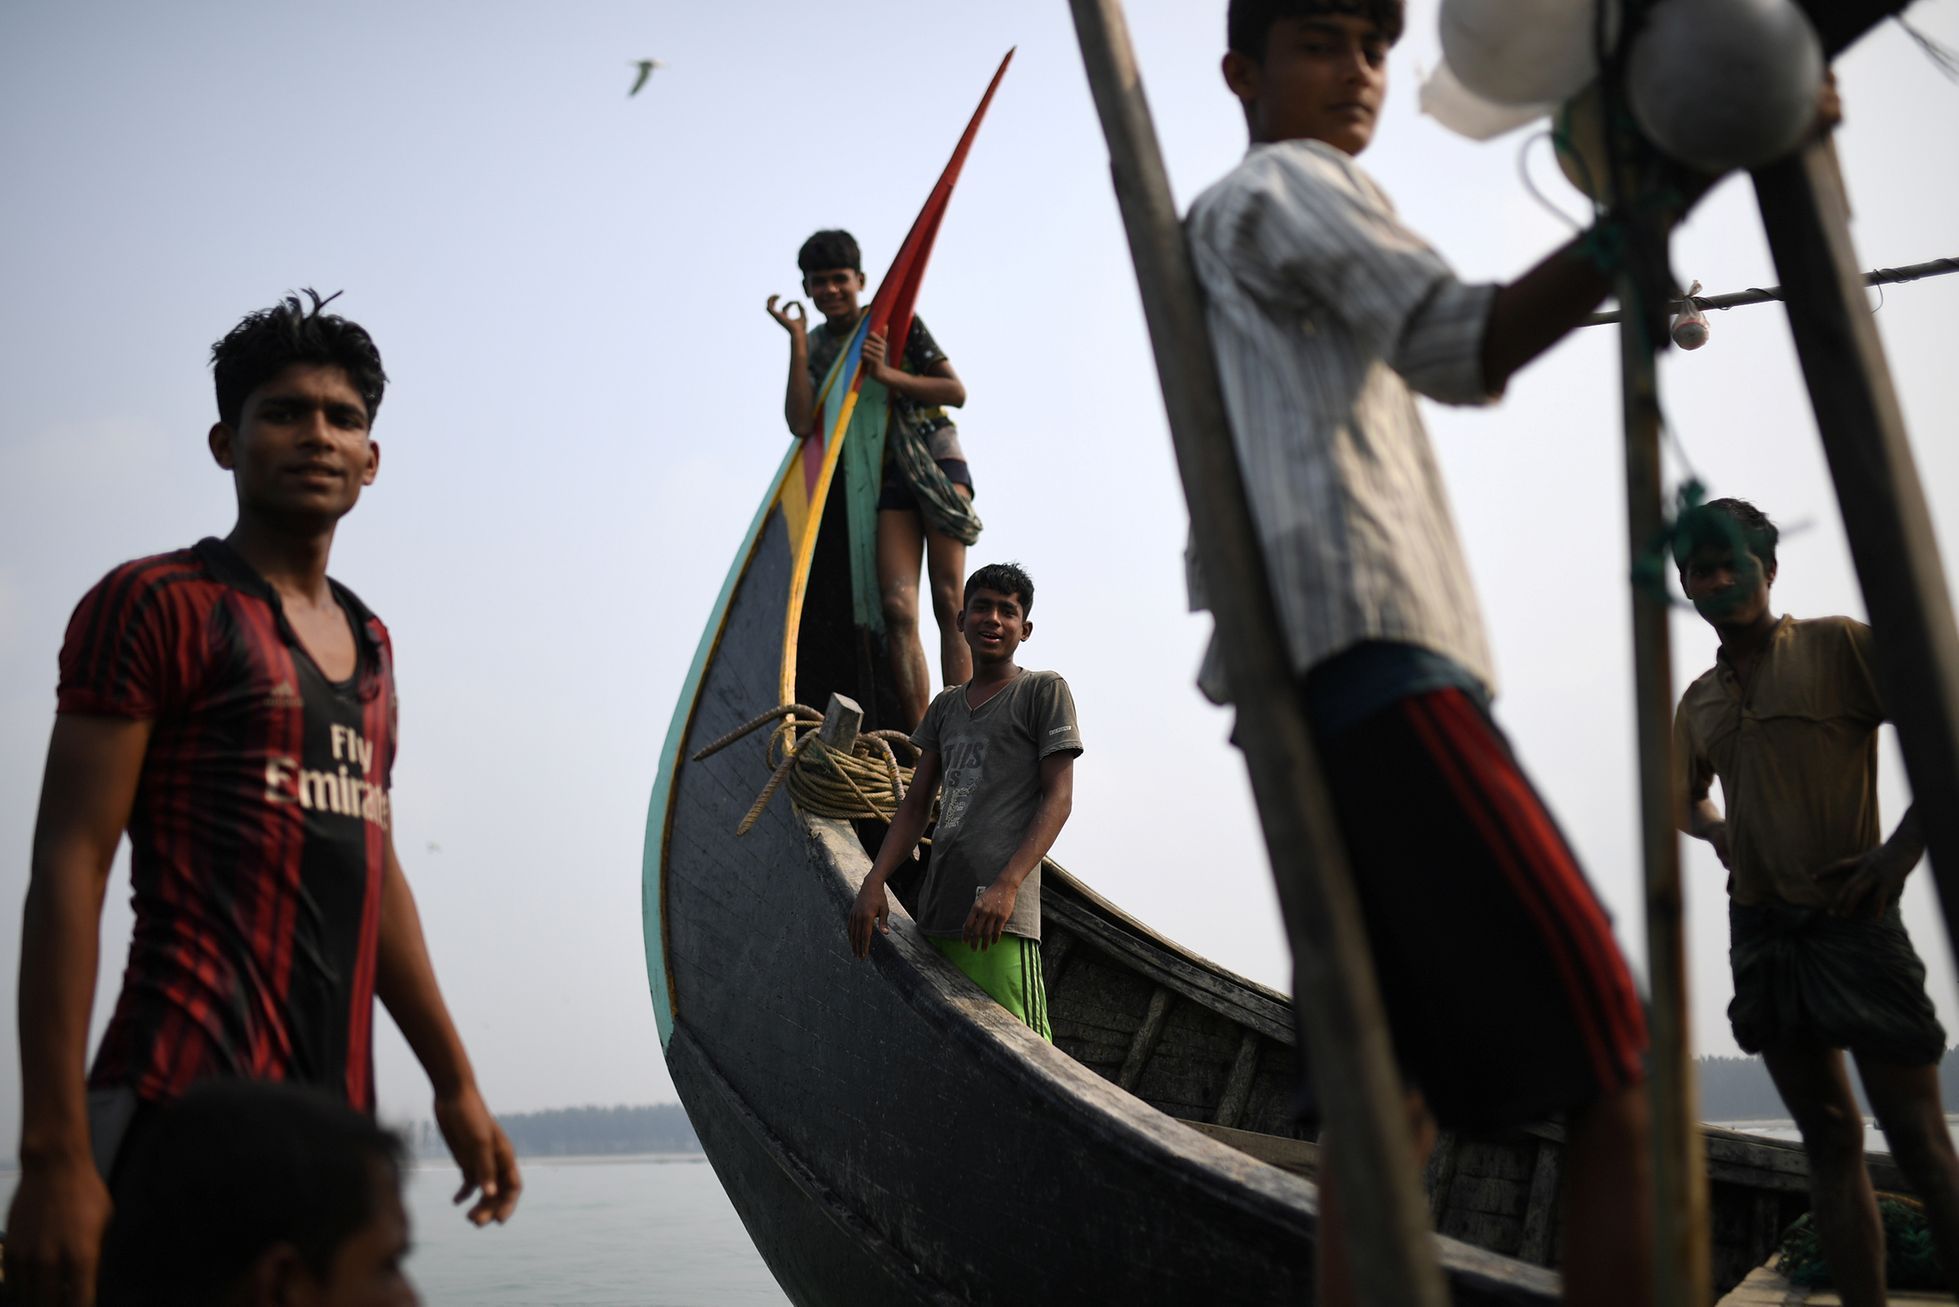 Fotogalerie / Rohingové v Bangladéši / Reuters / 8